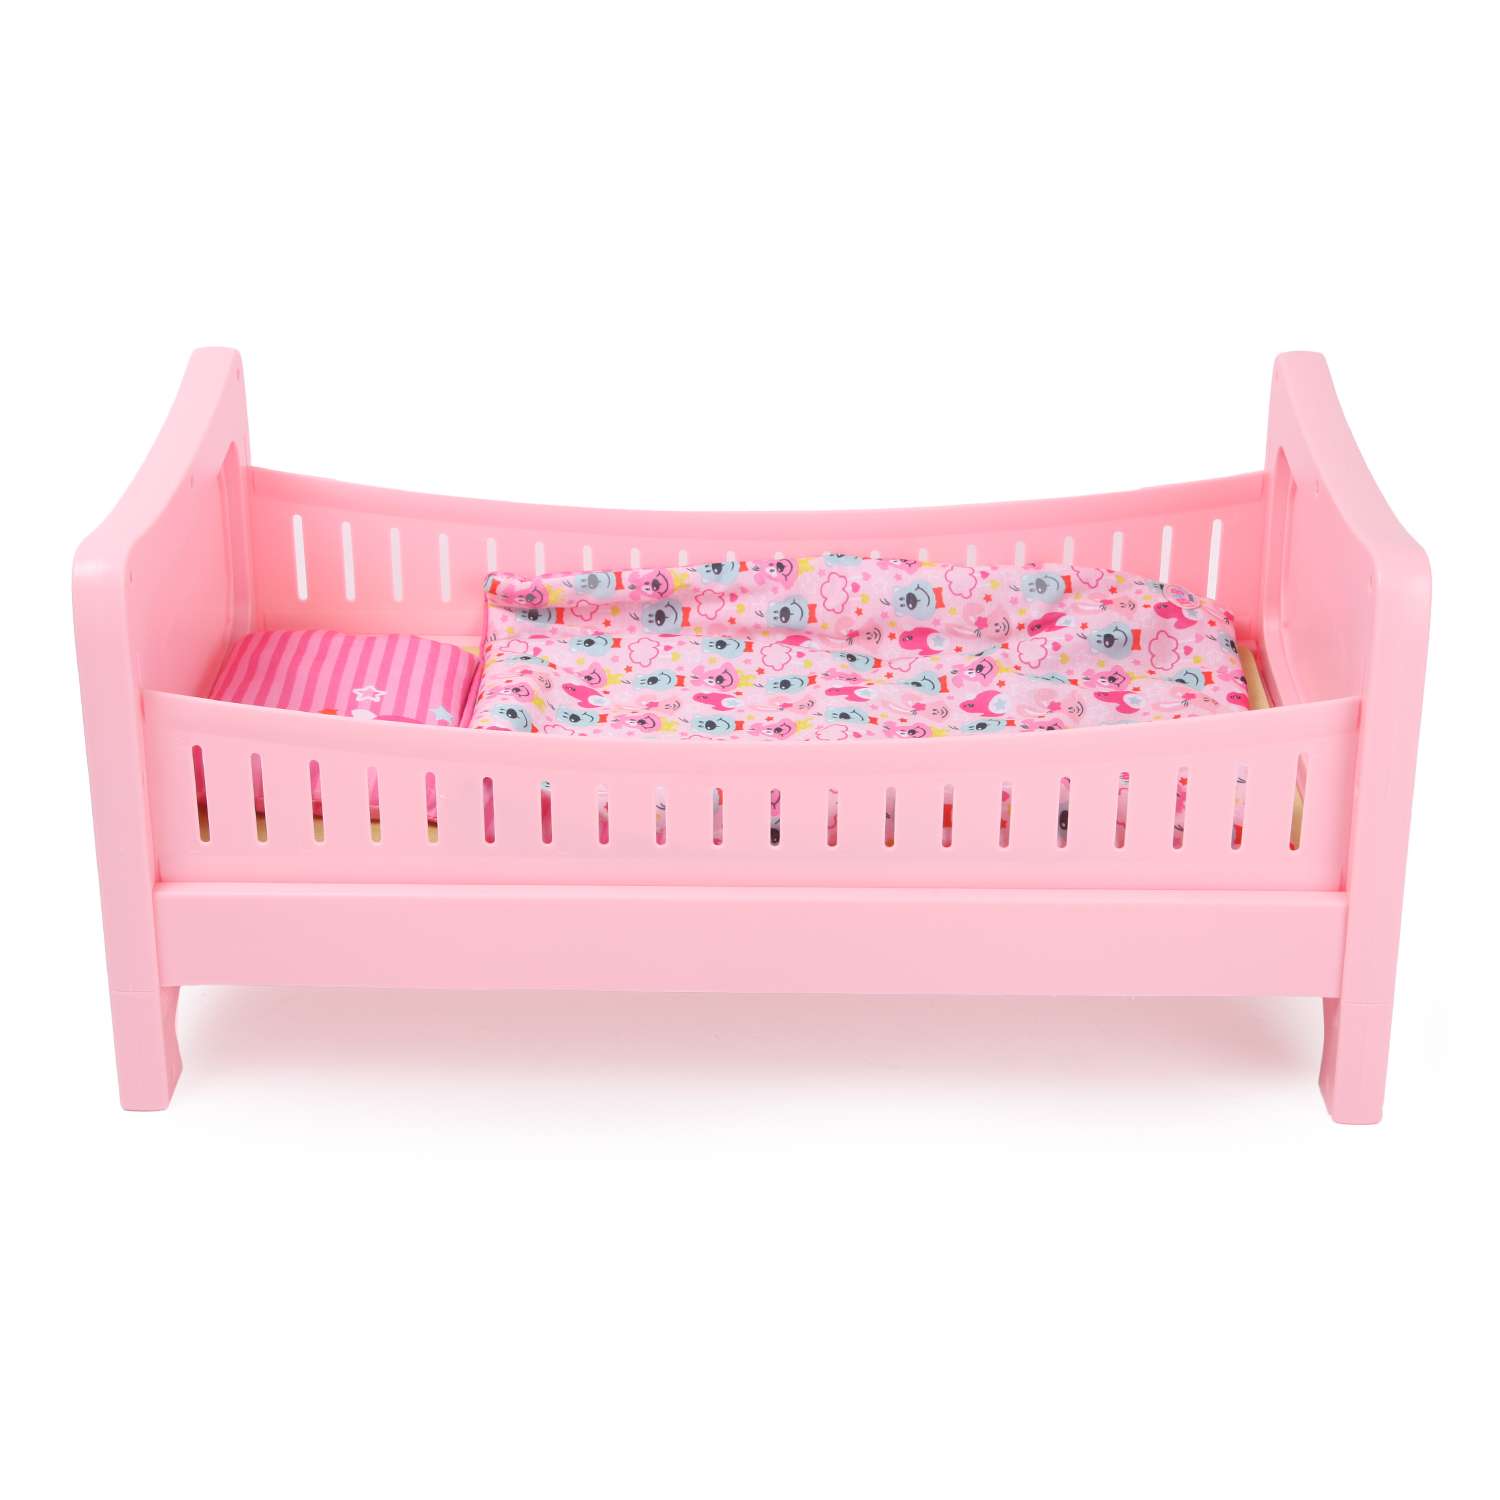 Набор для куклы Zapf Creation Baby Born кровать 824-399 824-399 - фото 3